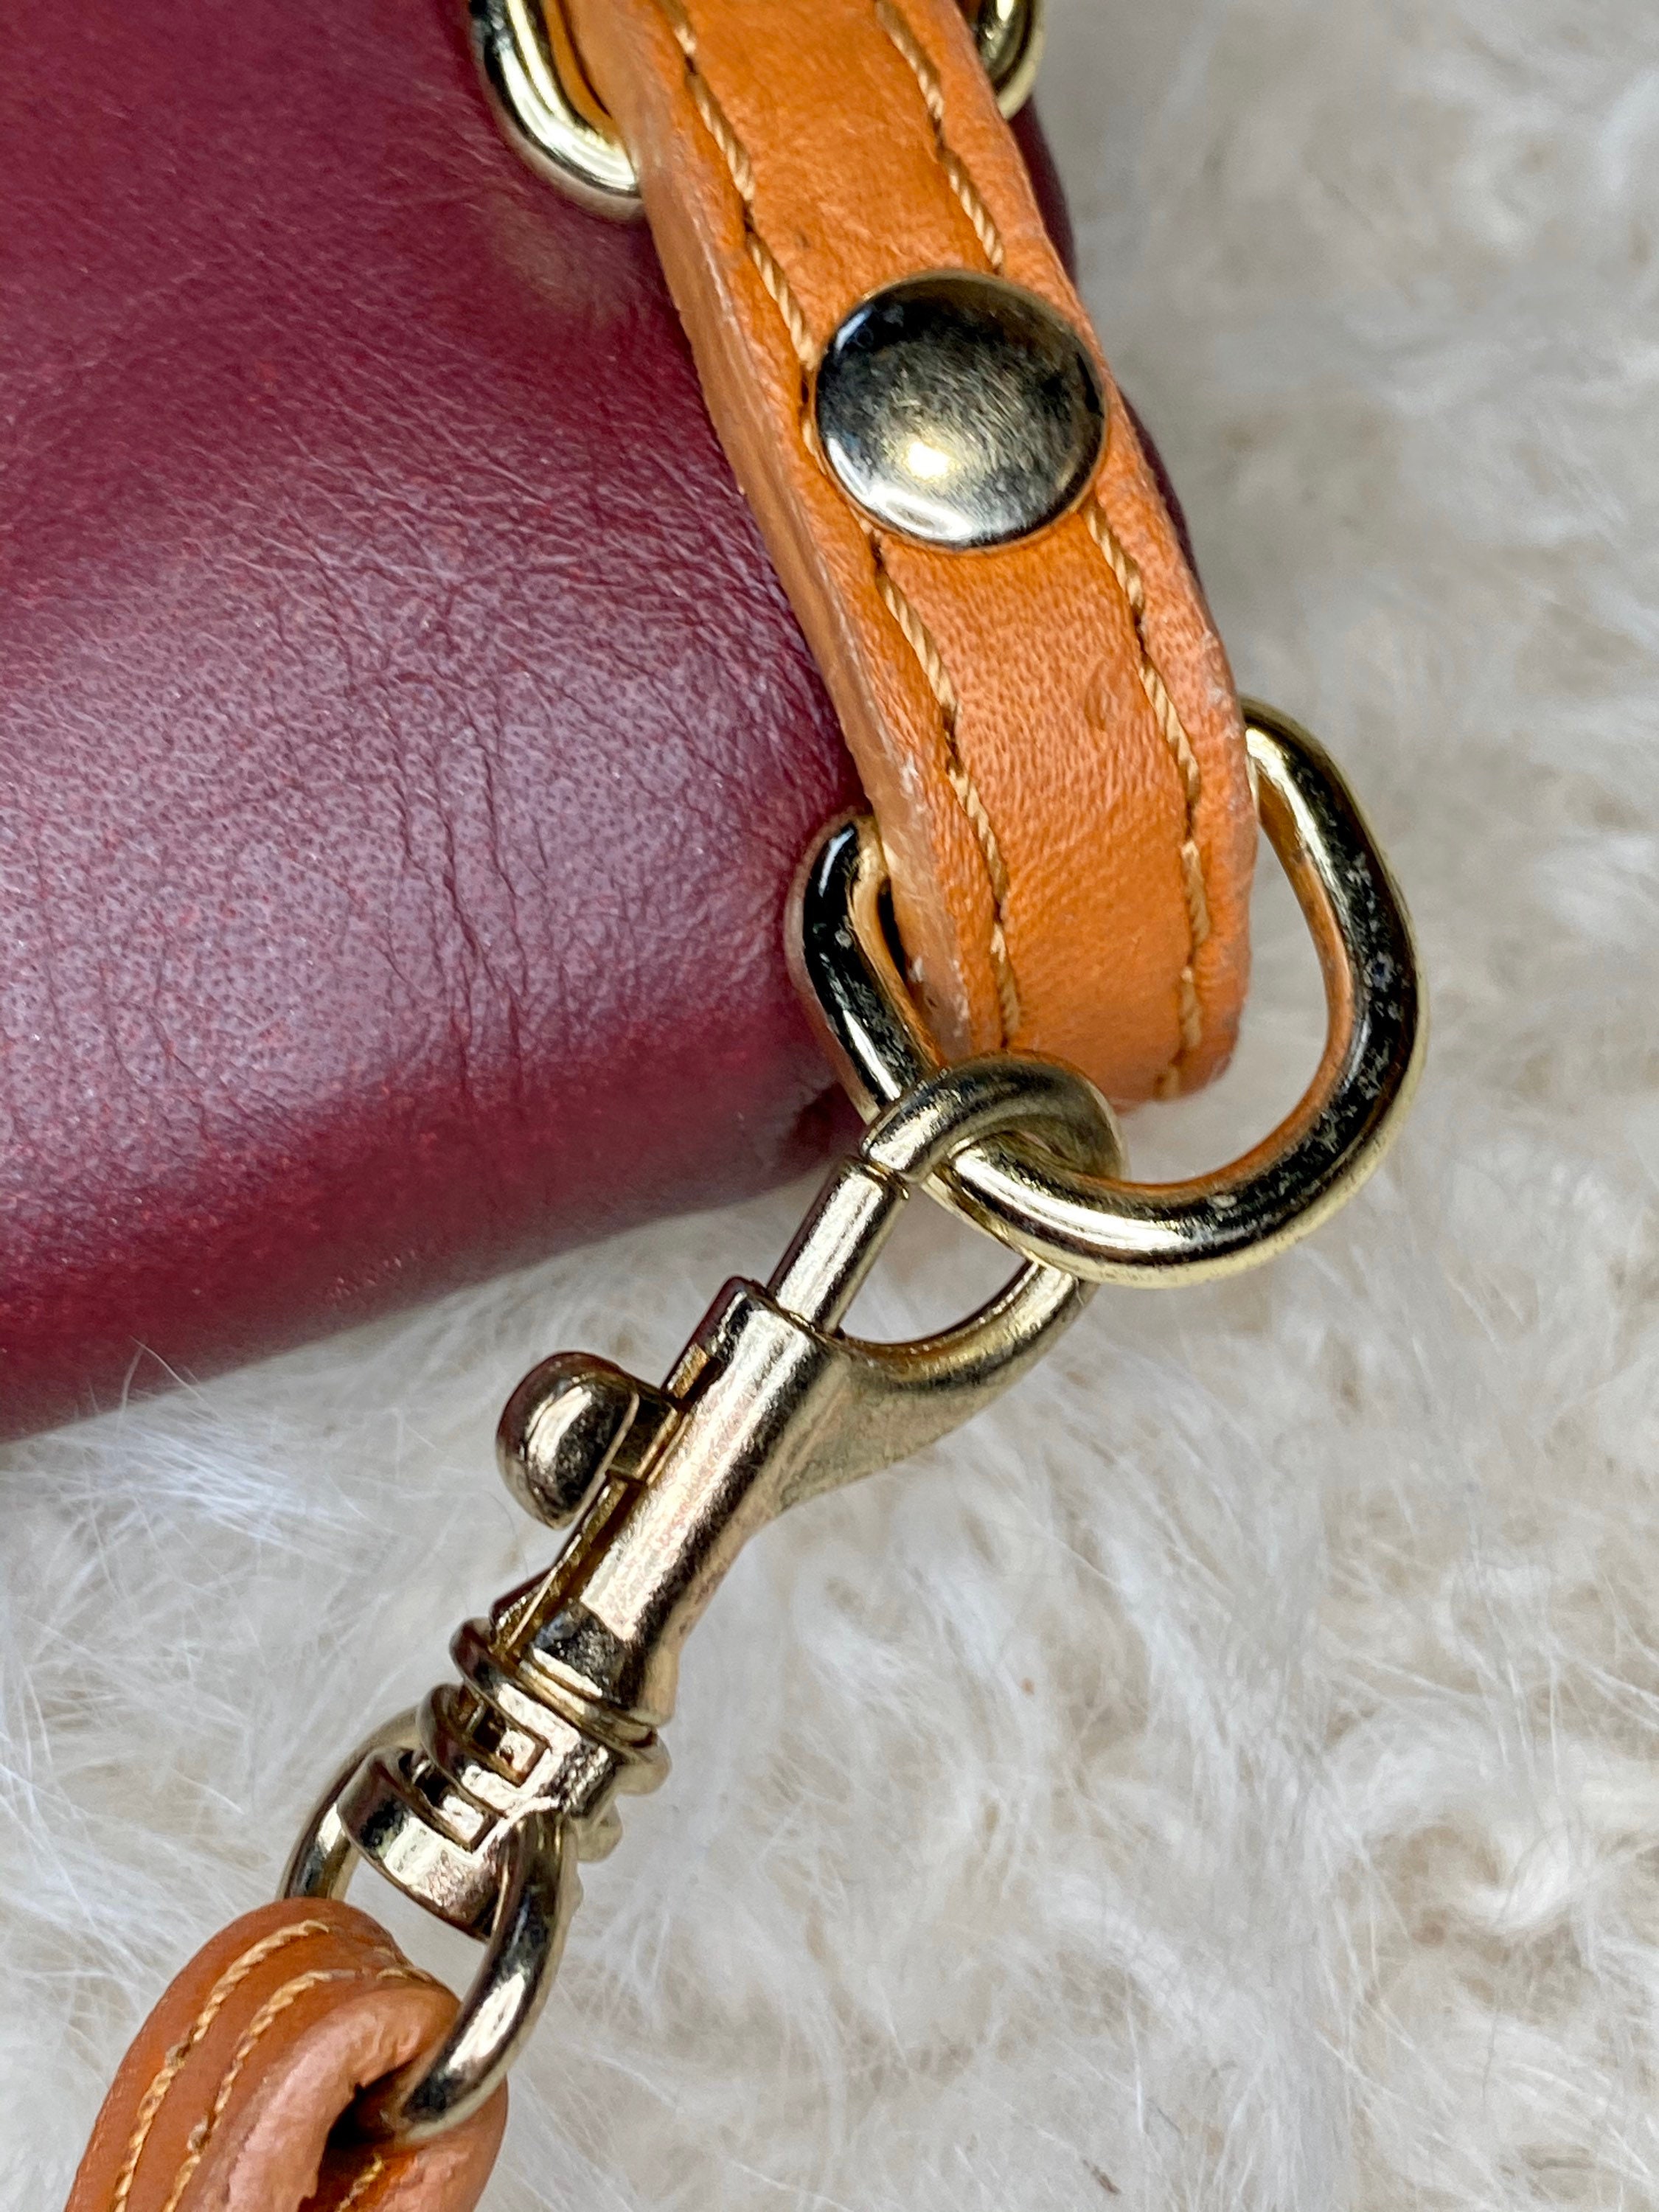 Leather Crossbody Bag Italian Made handbag maroon purse with | Etsy